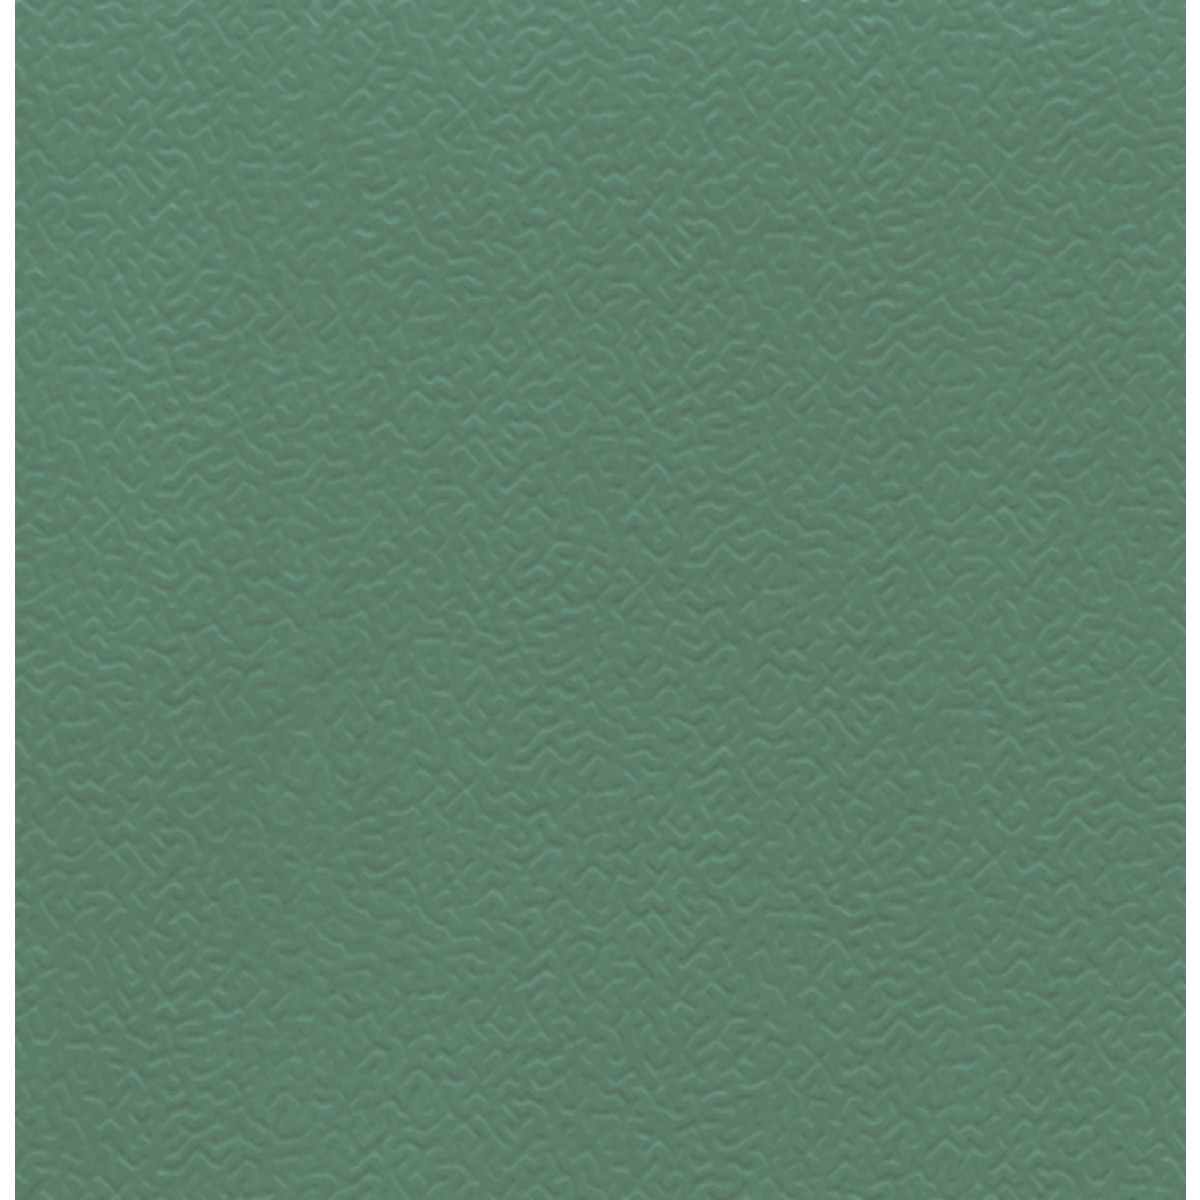 Color:spangrün, Dimensions:1220 mm x 10 m